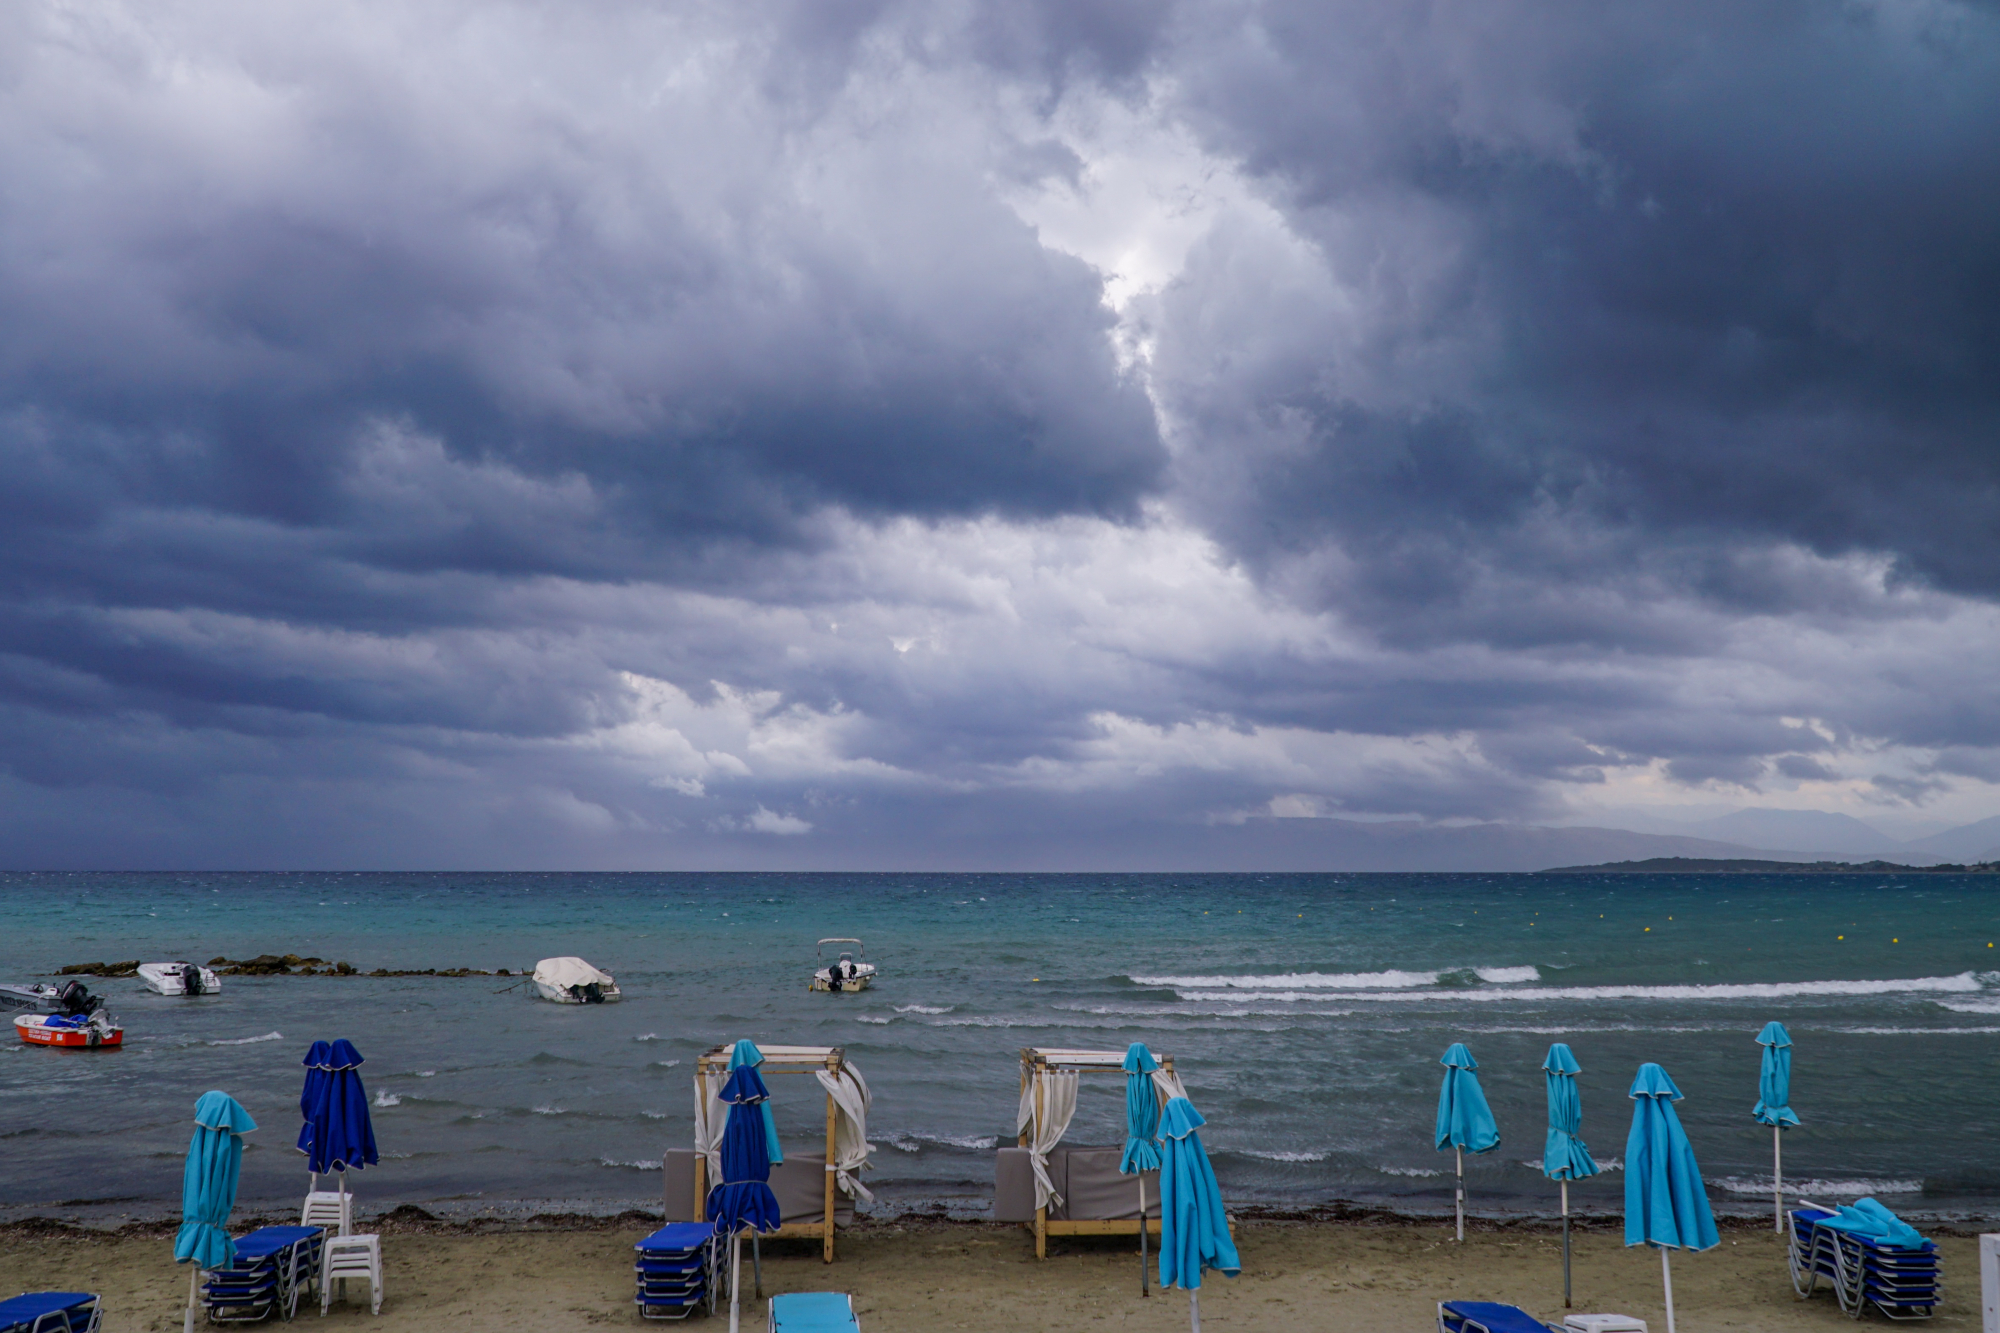 Κακοκαιρία «Petar»: Καταιγίδες και χαλάζι στην Κέρκυρα - Απεγκλωβίστηκαν 10 τουρίστες από παραλία